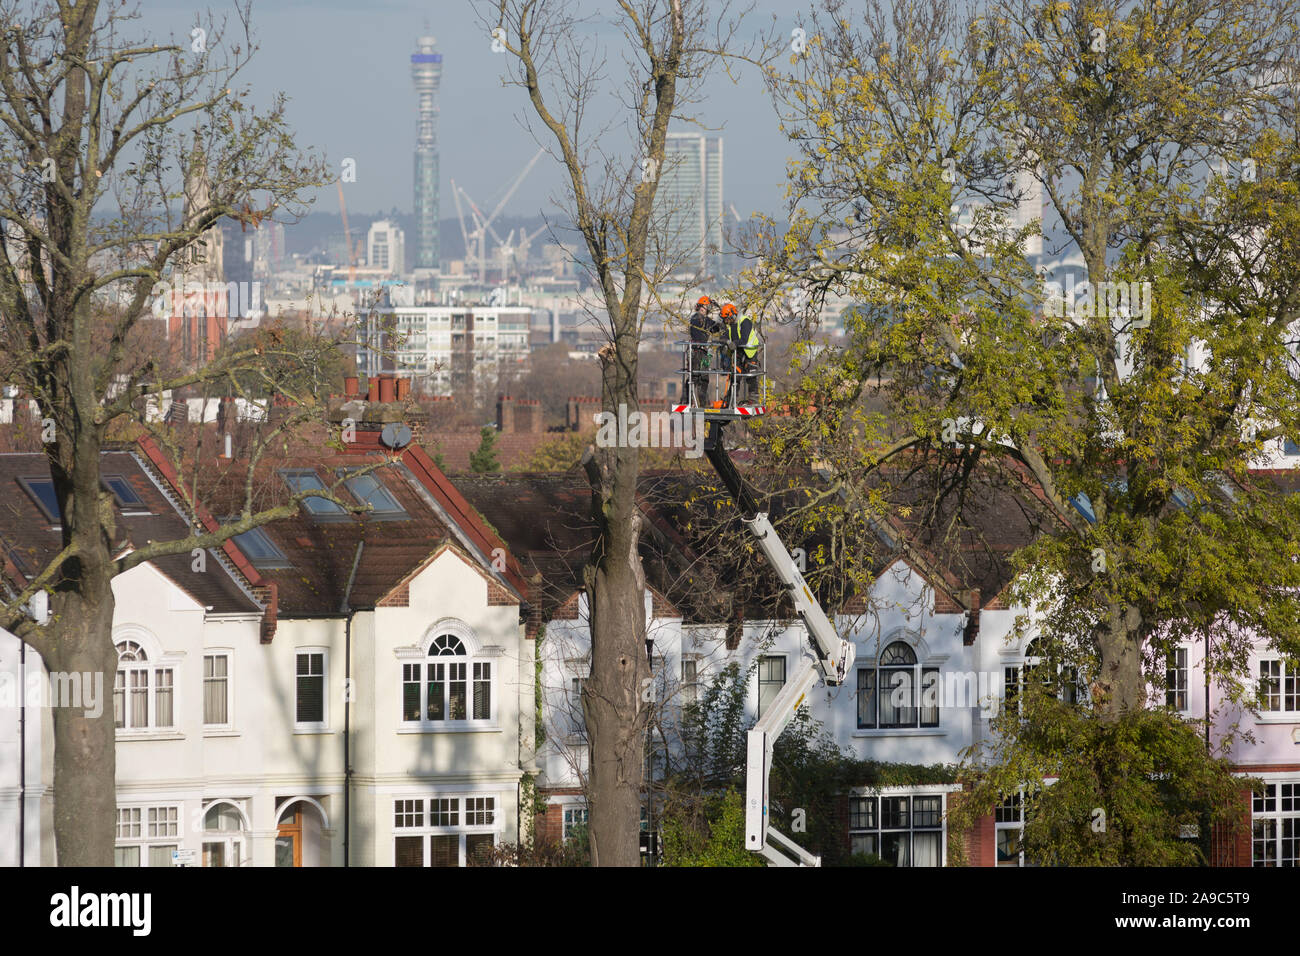 Chirurgiens enlever un arbre mort 100 ans de frêne en face des maisons de banlieue à Ruskin Park, un espace vert qui surplombe la capitale dans le quartier londonien de Lambeth, le 13 novembre 2019, à Londres, en Angleterre. Banque D'Images